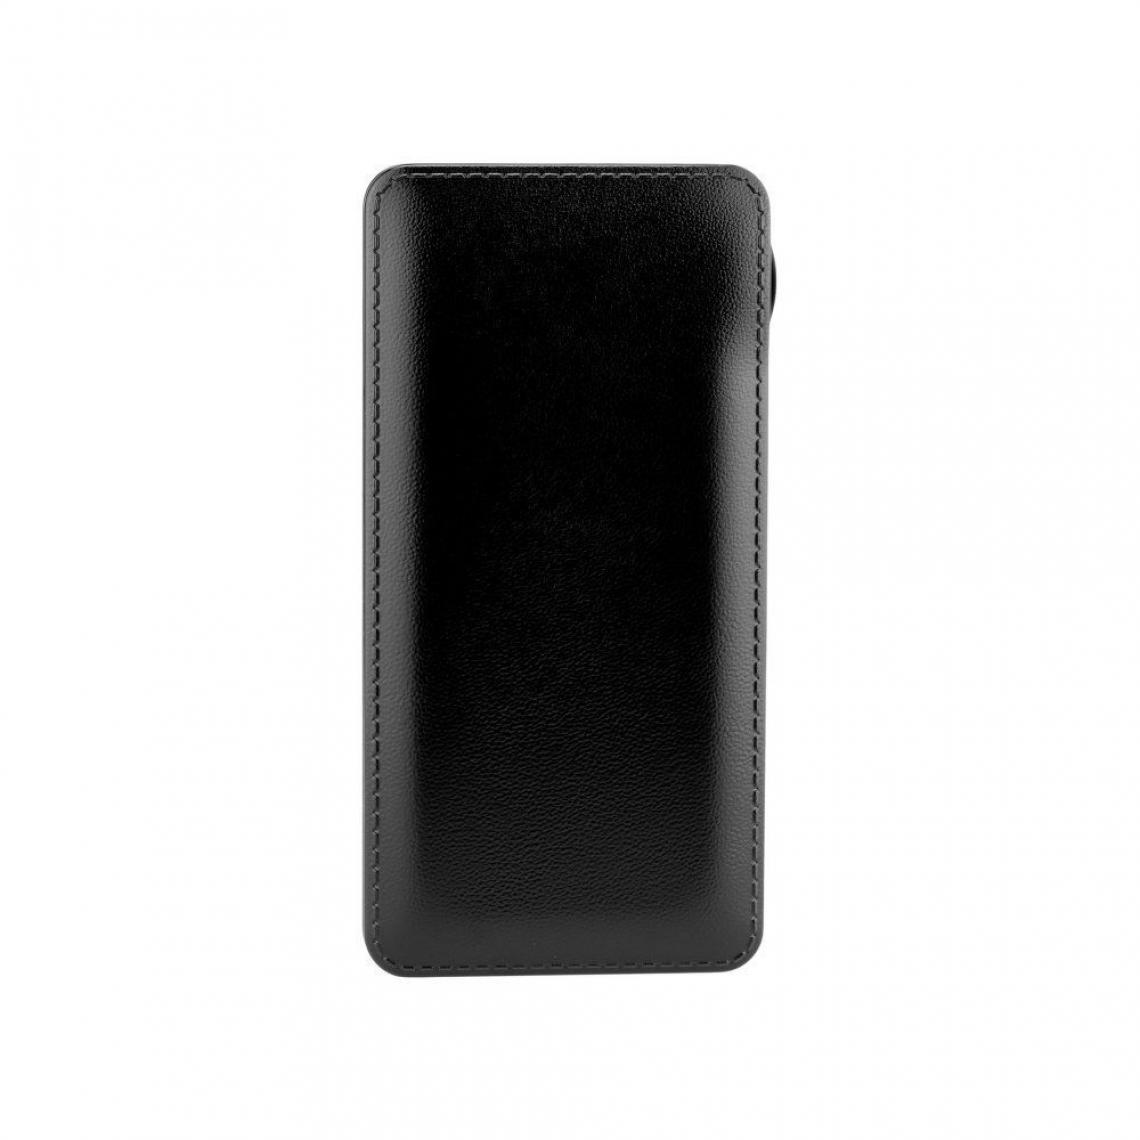 Ozzzo - Chargeur batterie externe 30000 mAh powerbank ozzzo noir pour XIAOMI Pocophone F1 - Autres accessoires smartphone